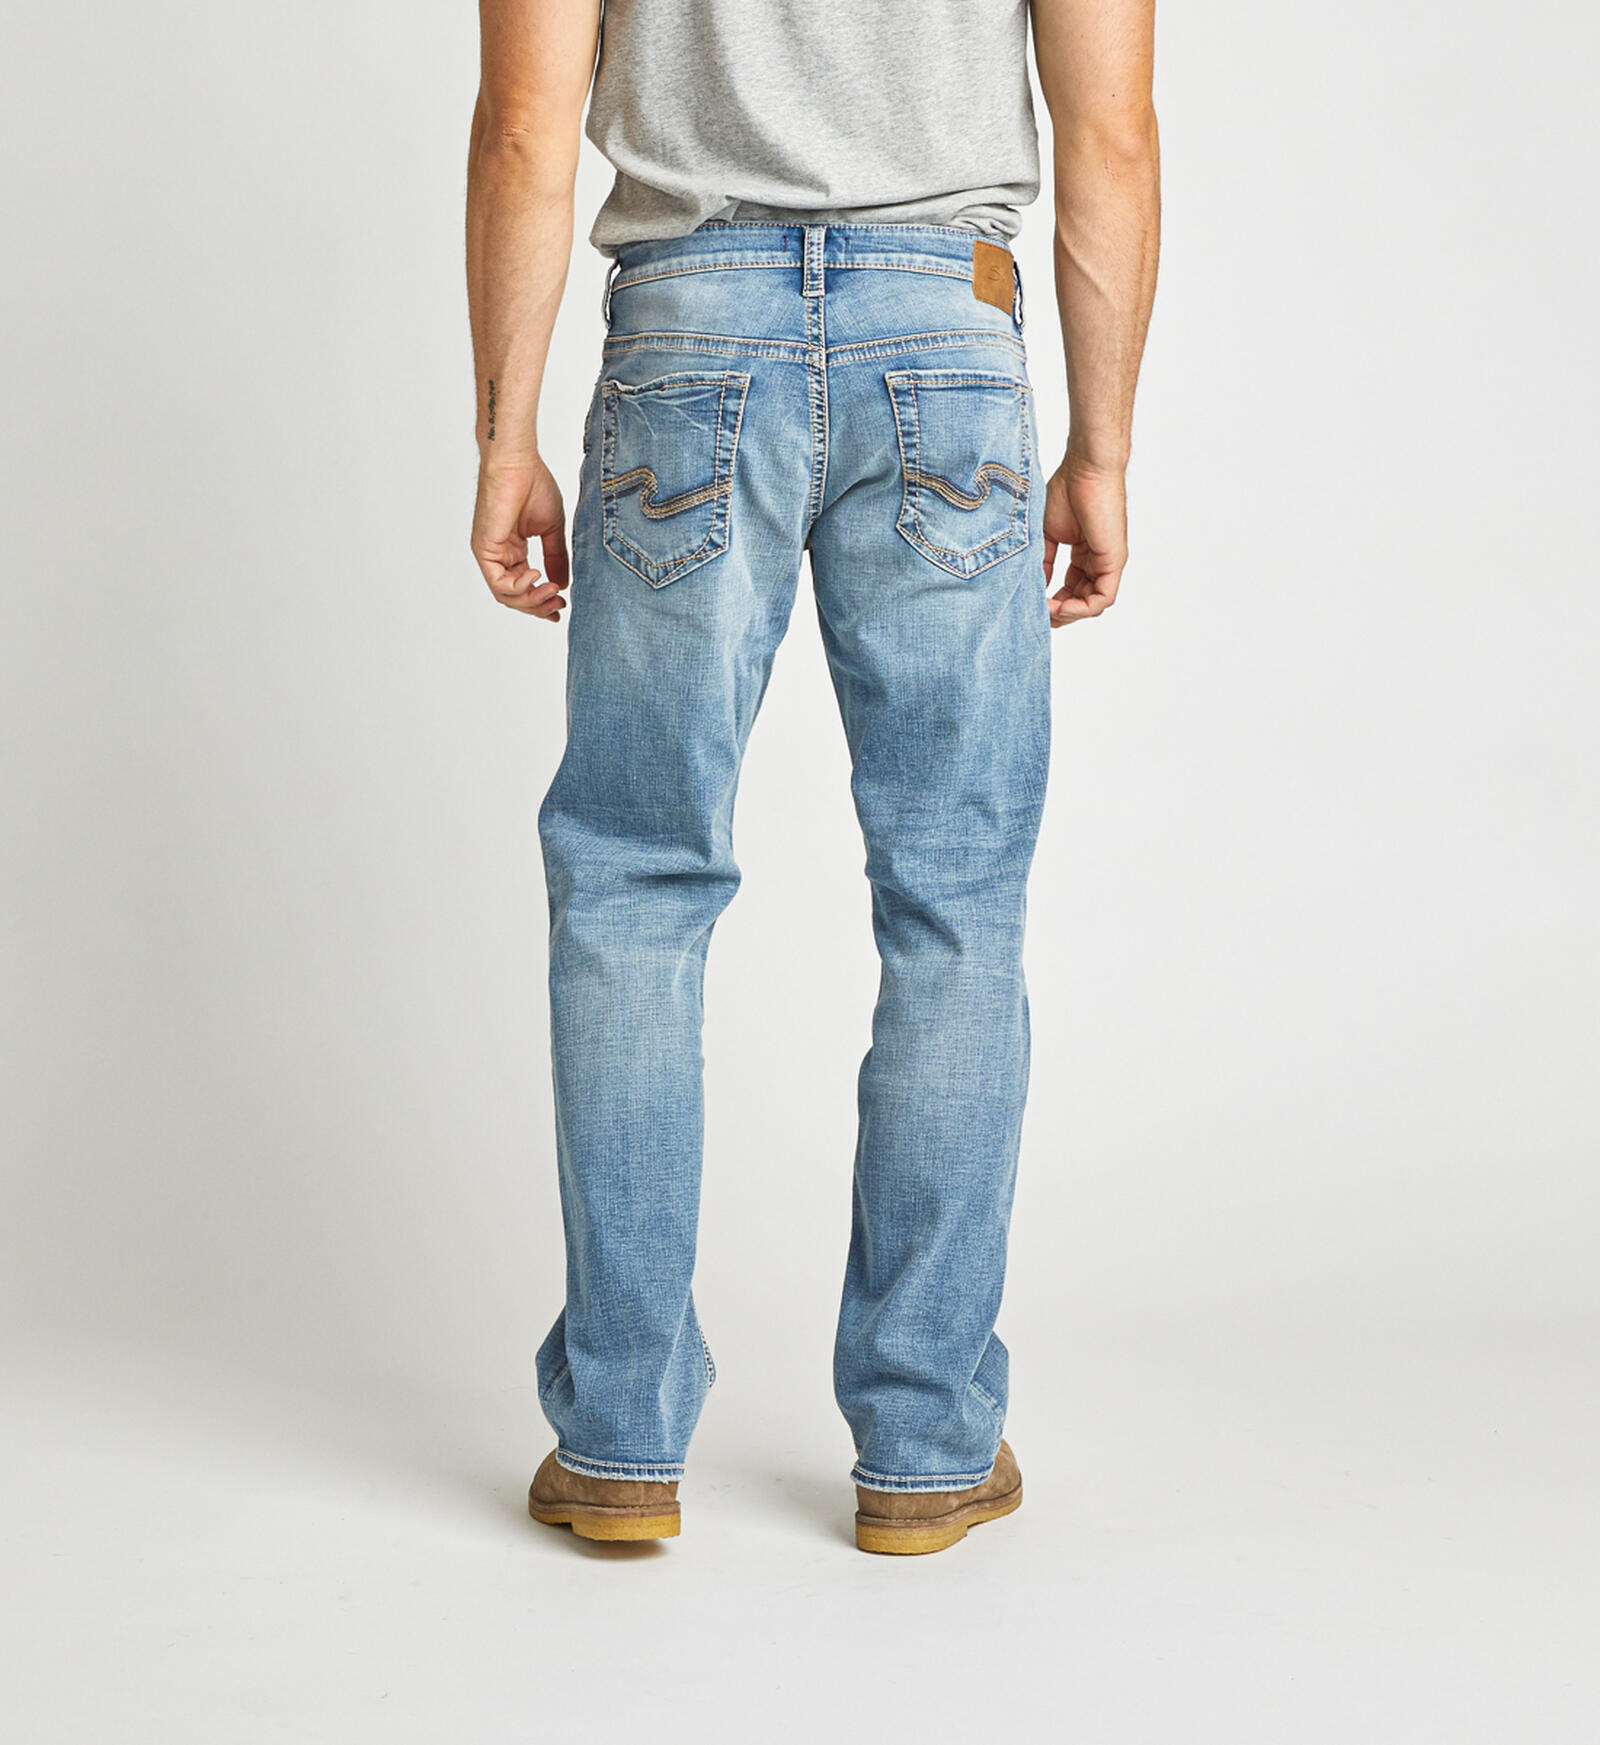 Buy Gordie 99.00 | Silver Jeans US New